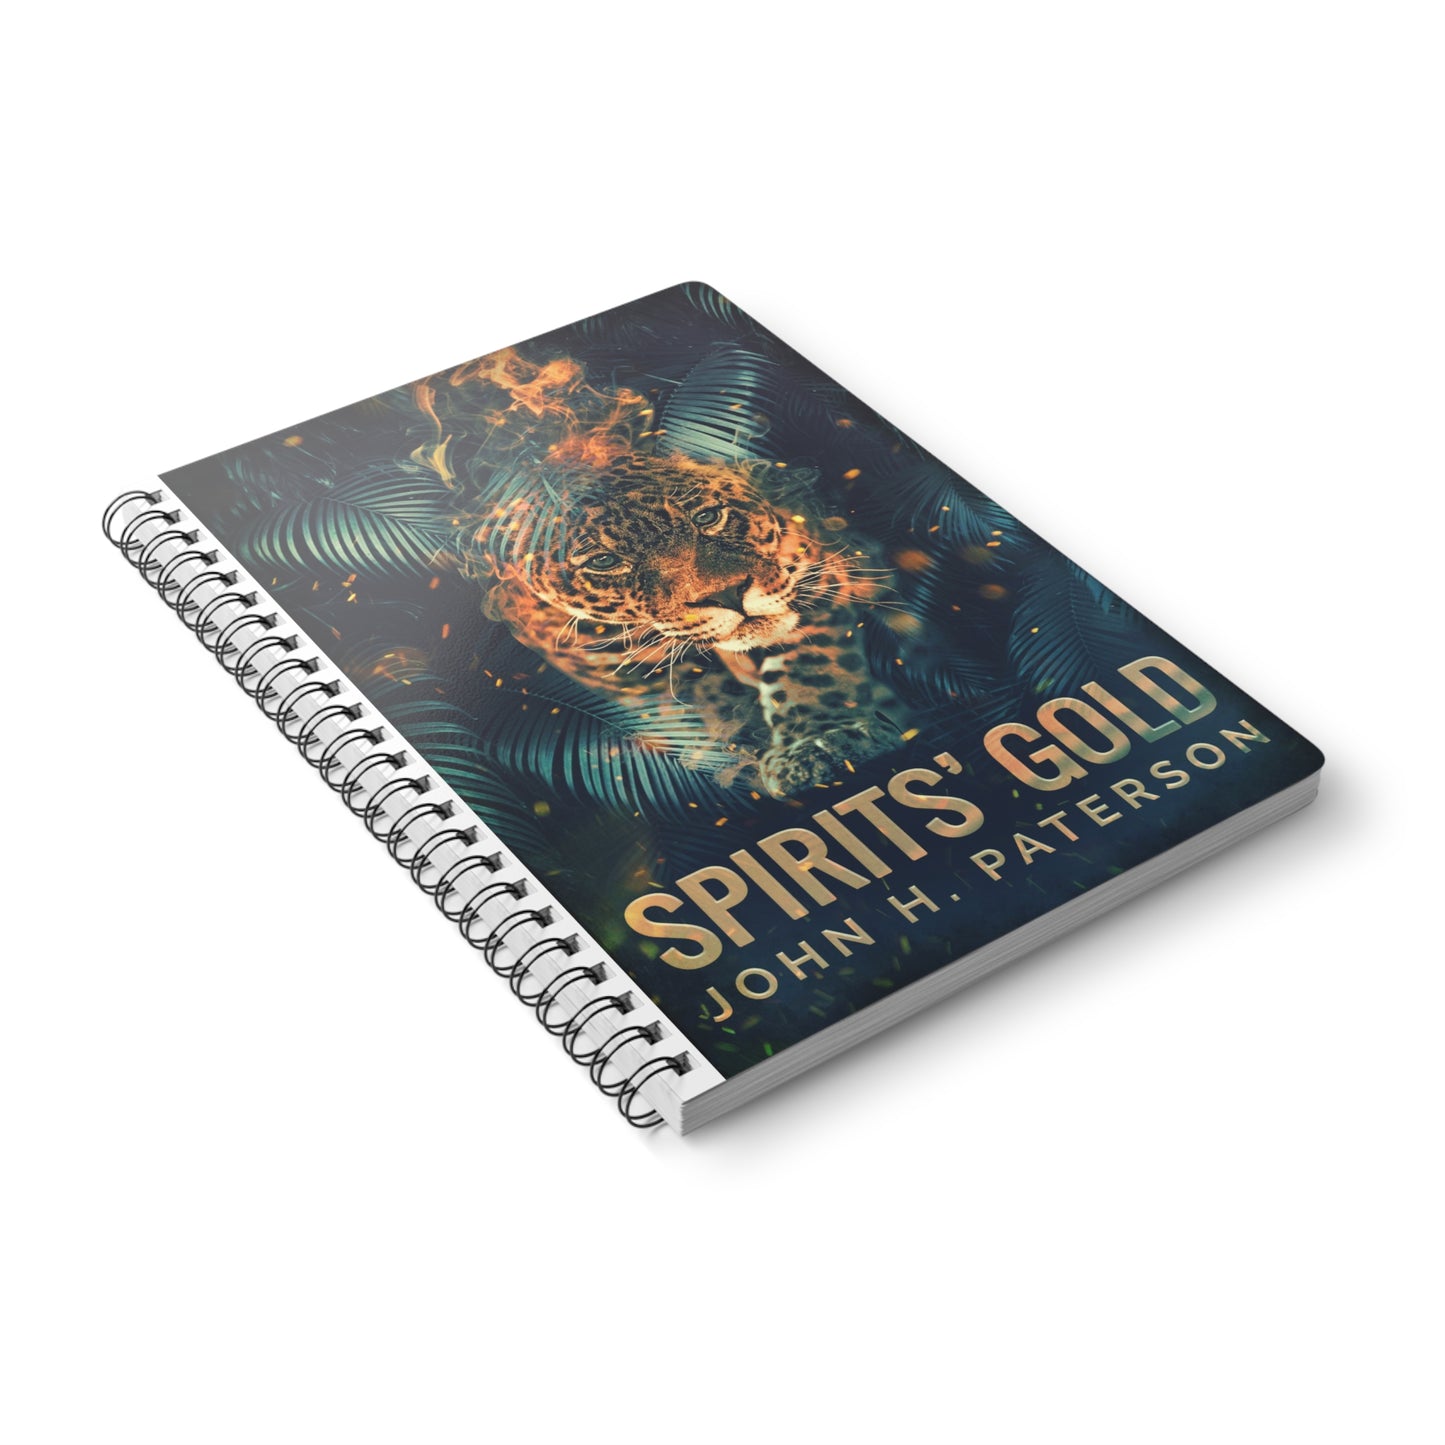 Spirits' Gold - A5 Wirebound Notebook